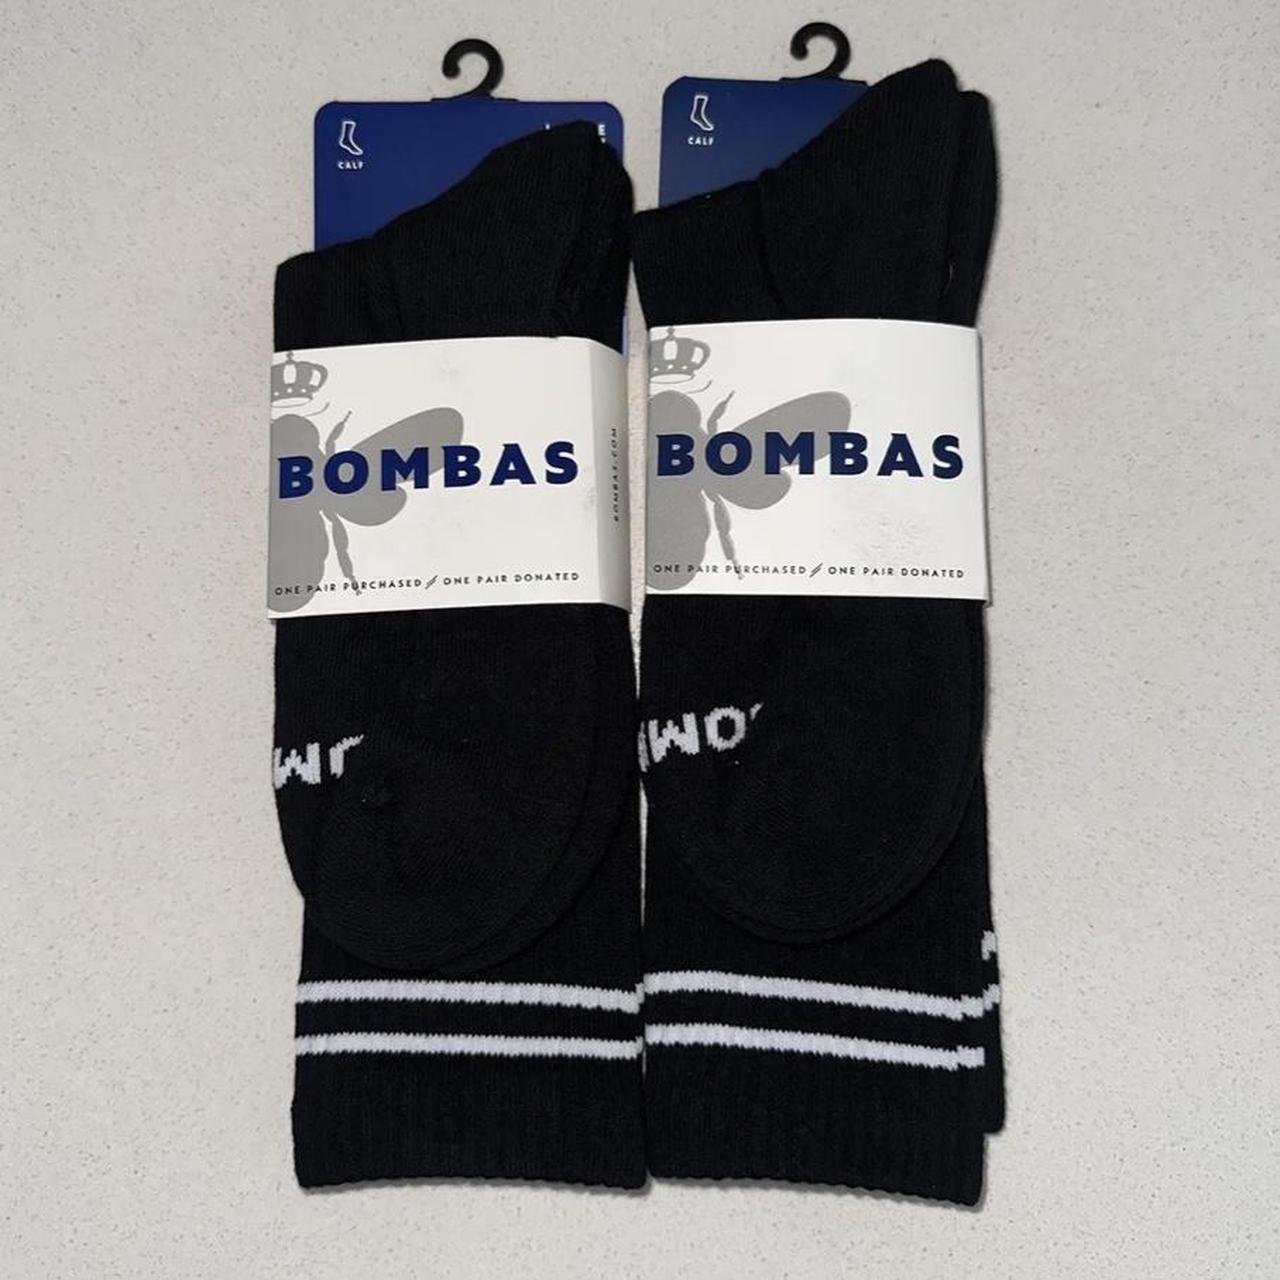 Bombas Men's Black and White Socks